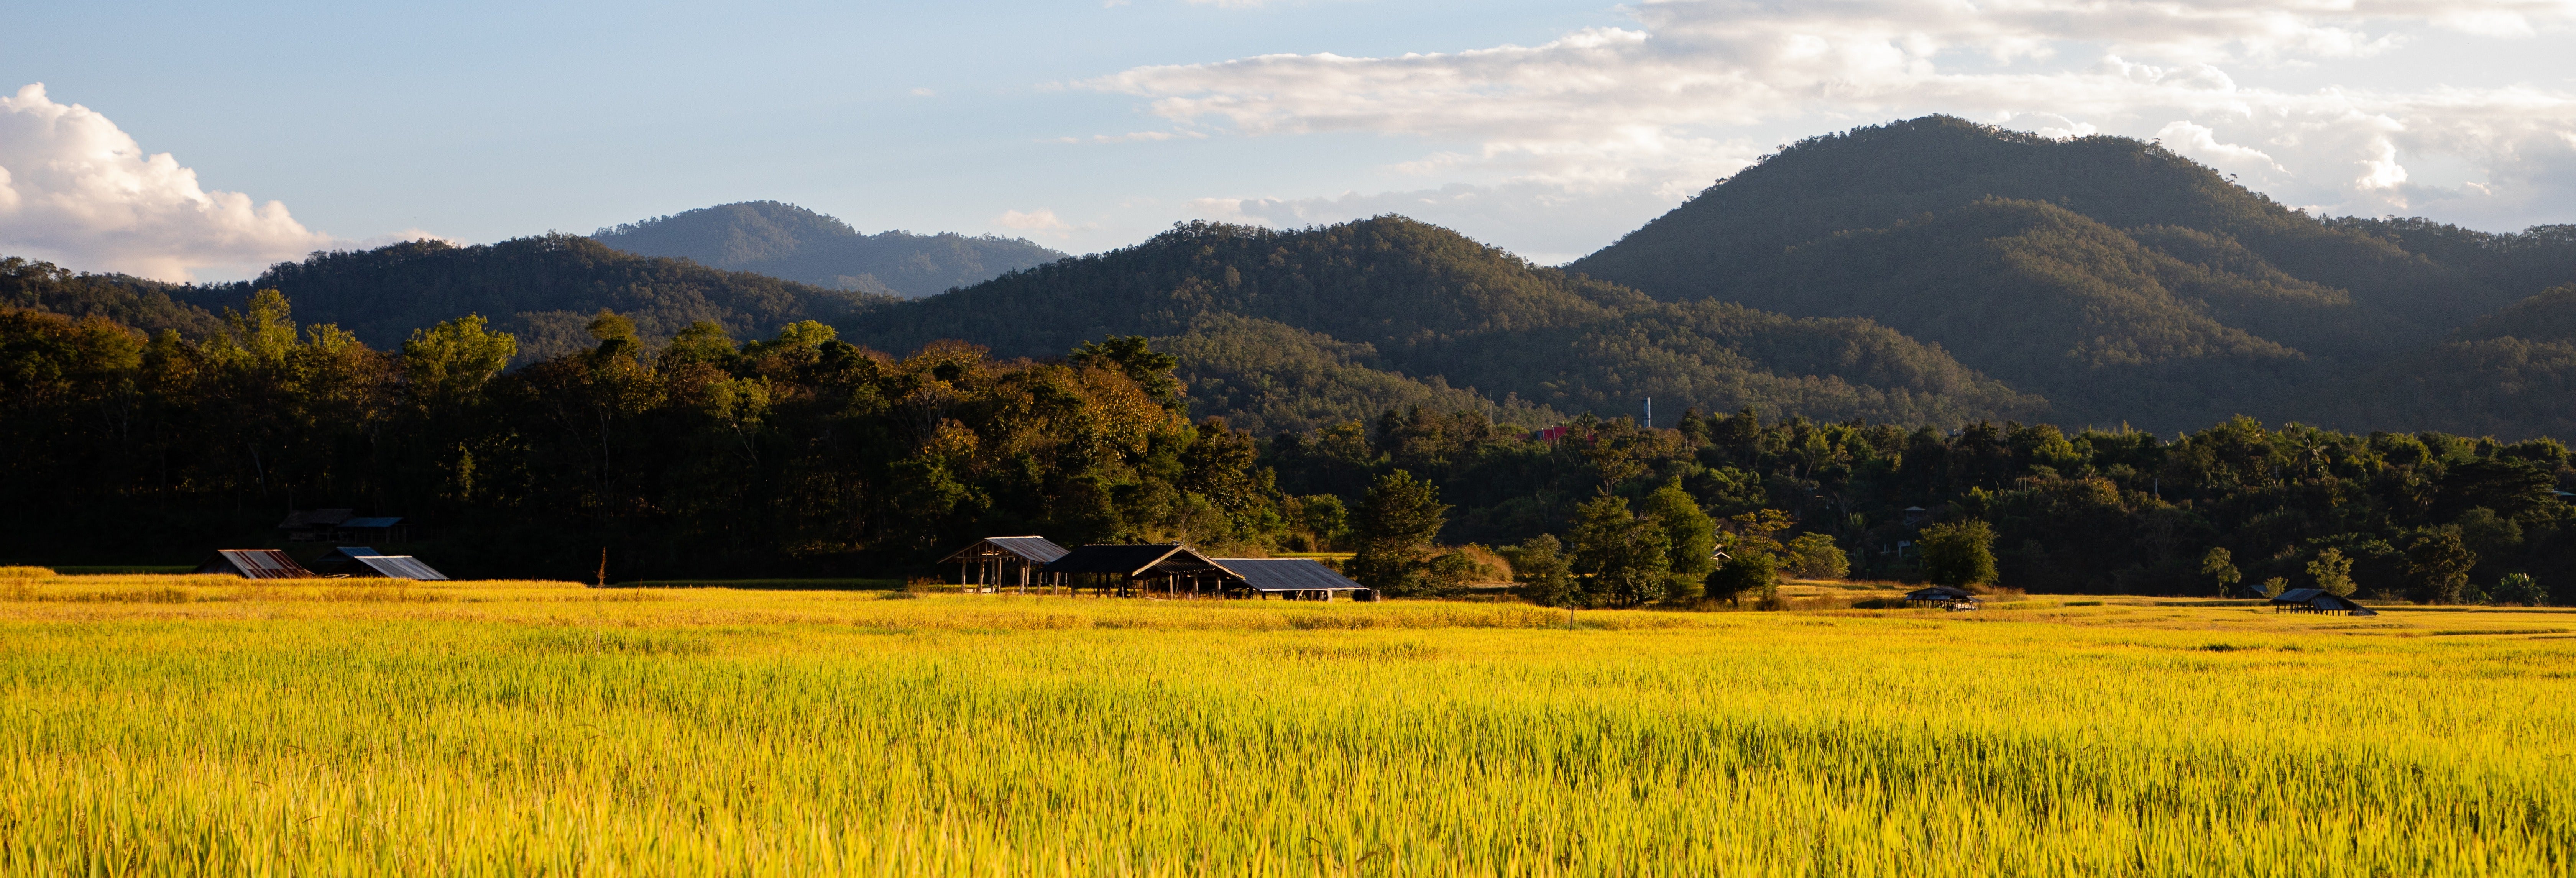 Excursão aos arrozais de Sekinchan